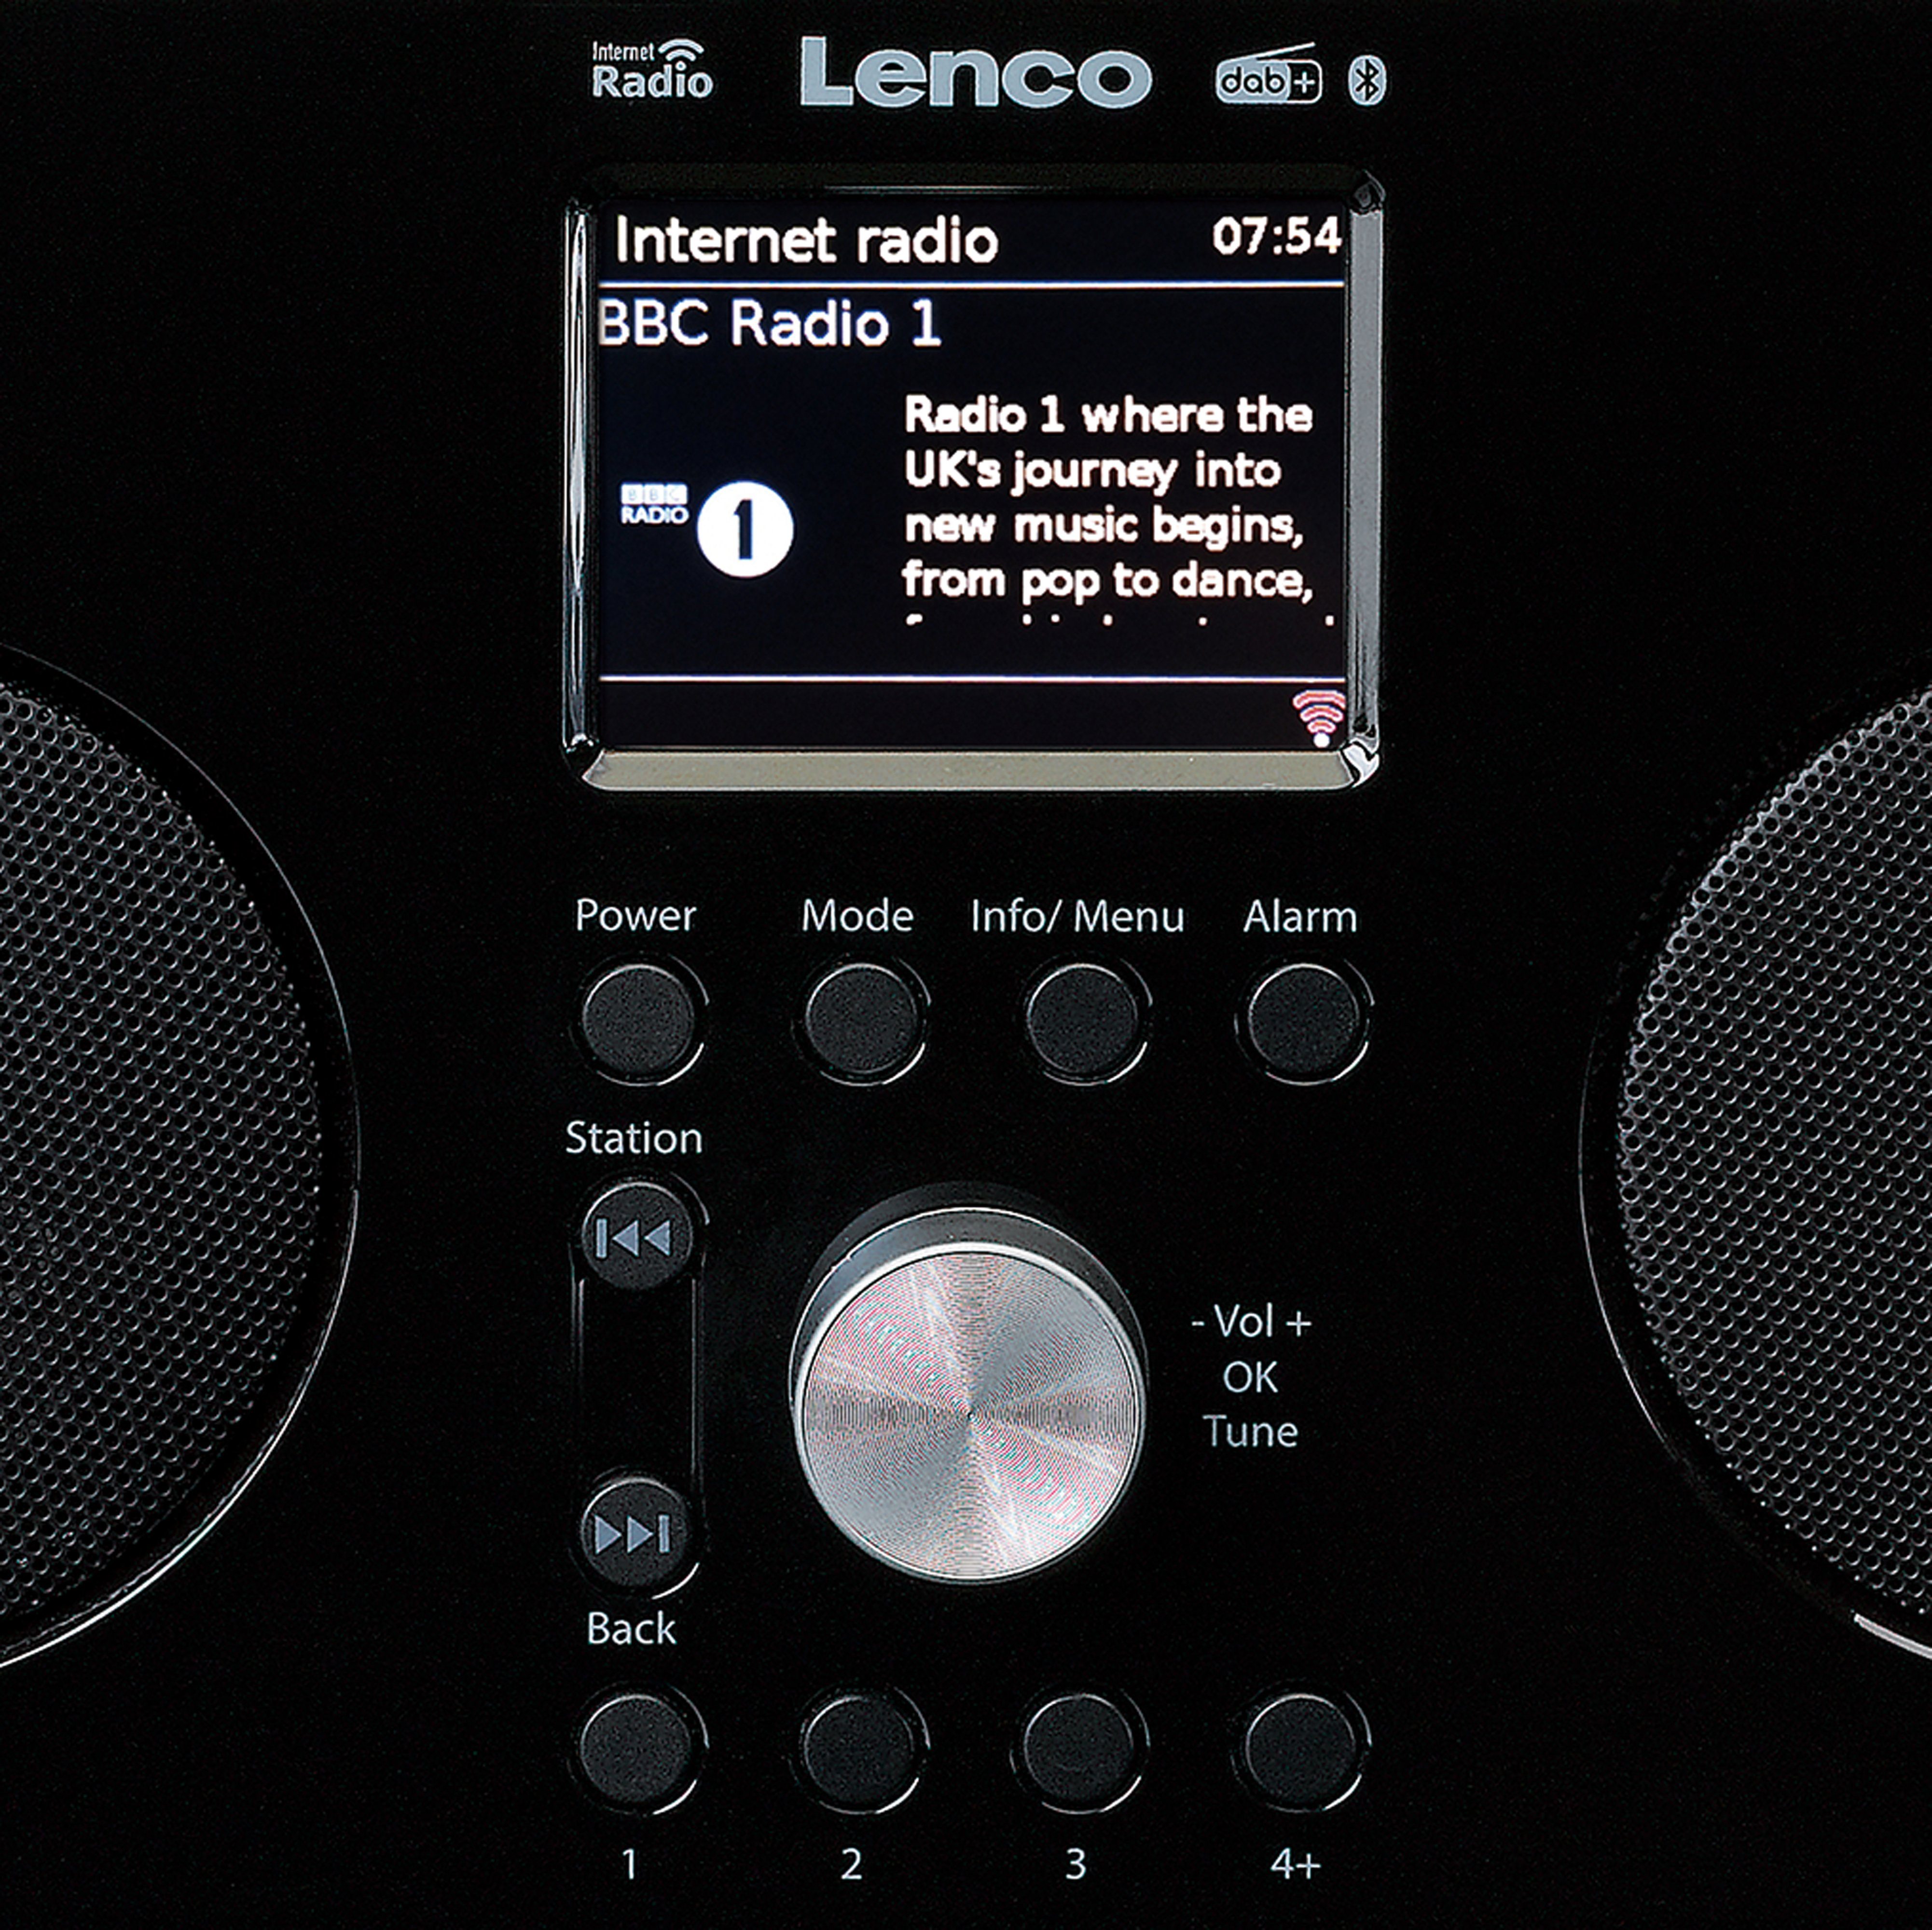 Lenco PIR-645 Internet-Radio (Digitalradio (DAB), 5,00 PLL W, Bluetooth) FM Schwarz-Silber Radio